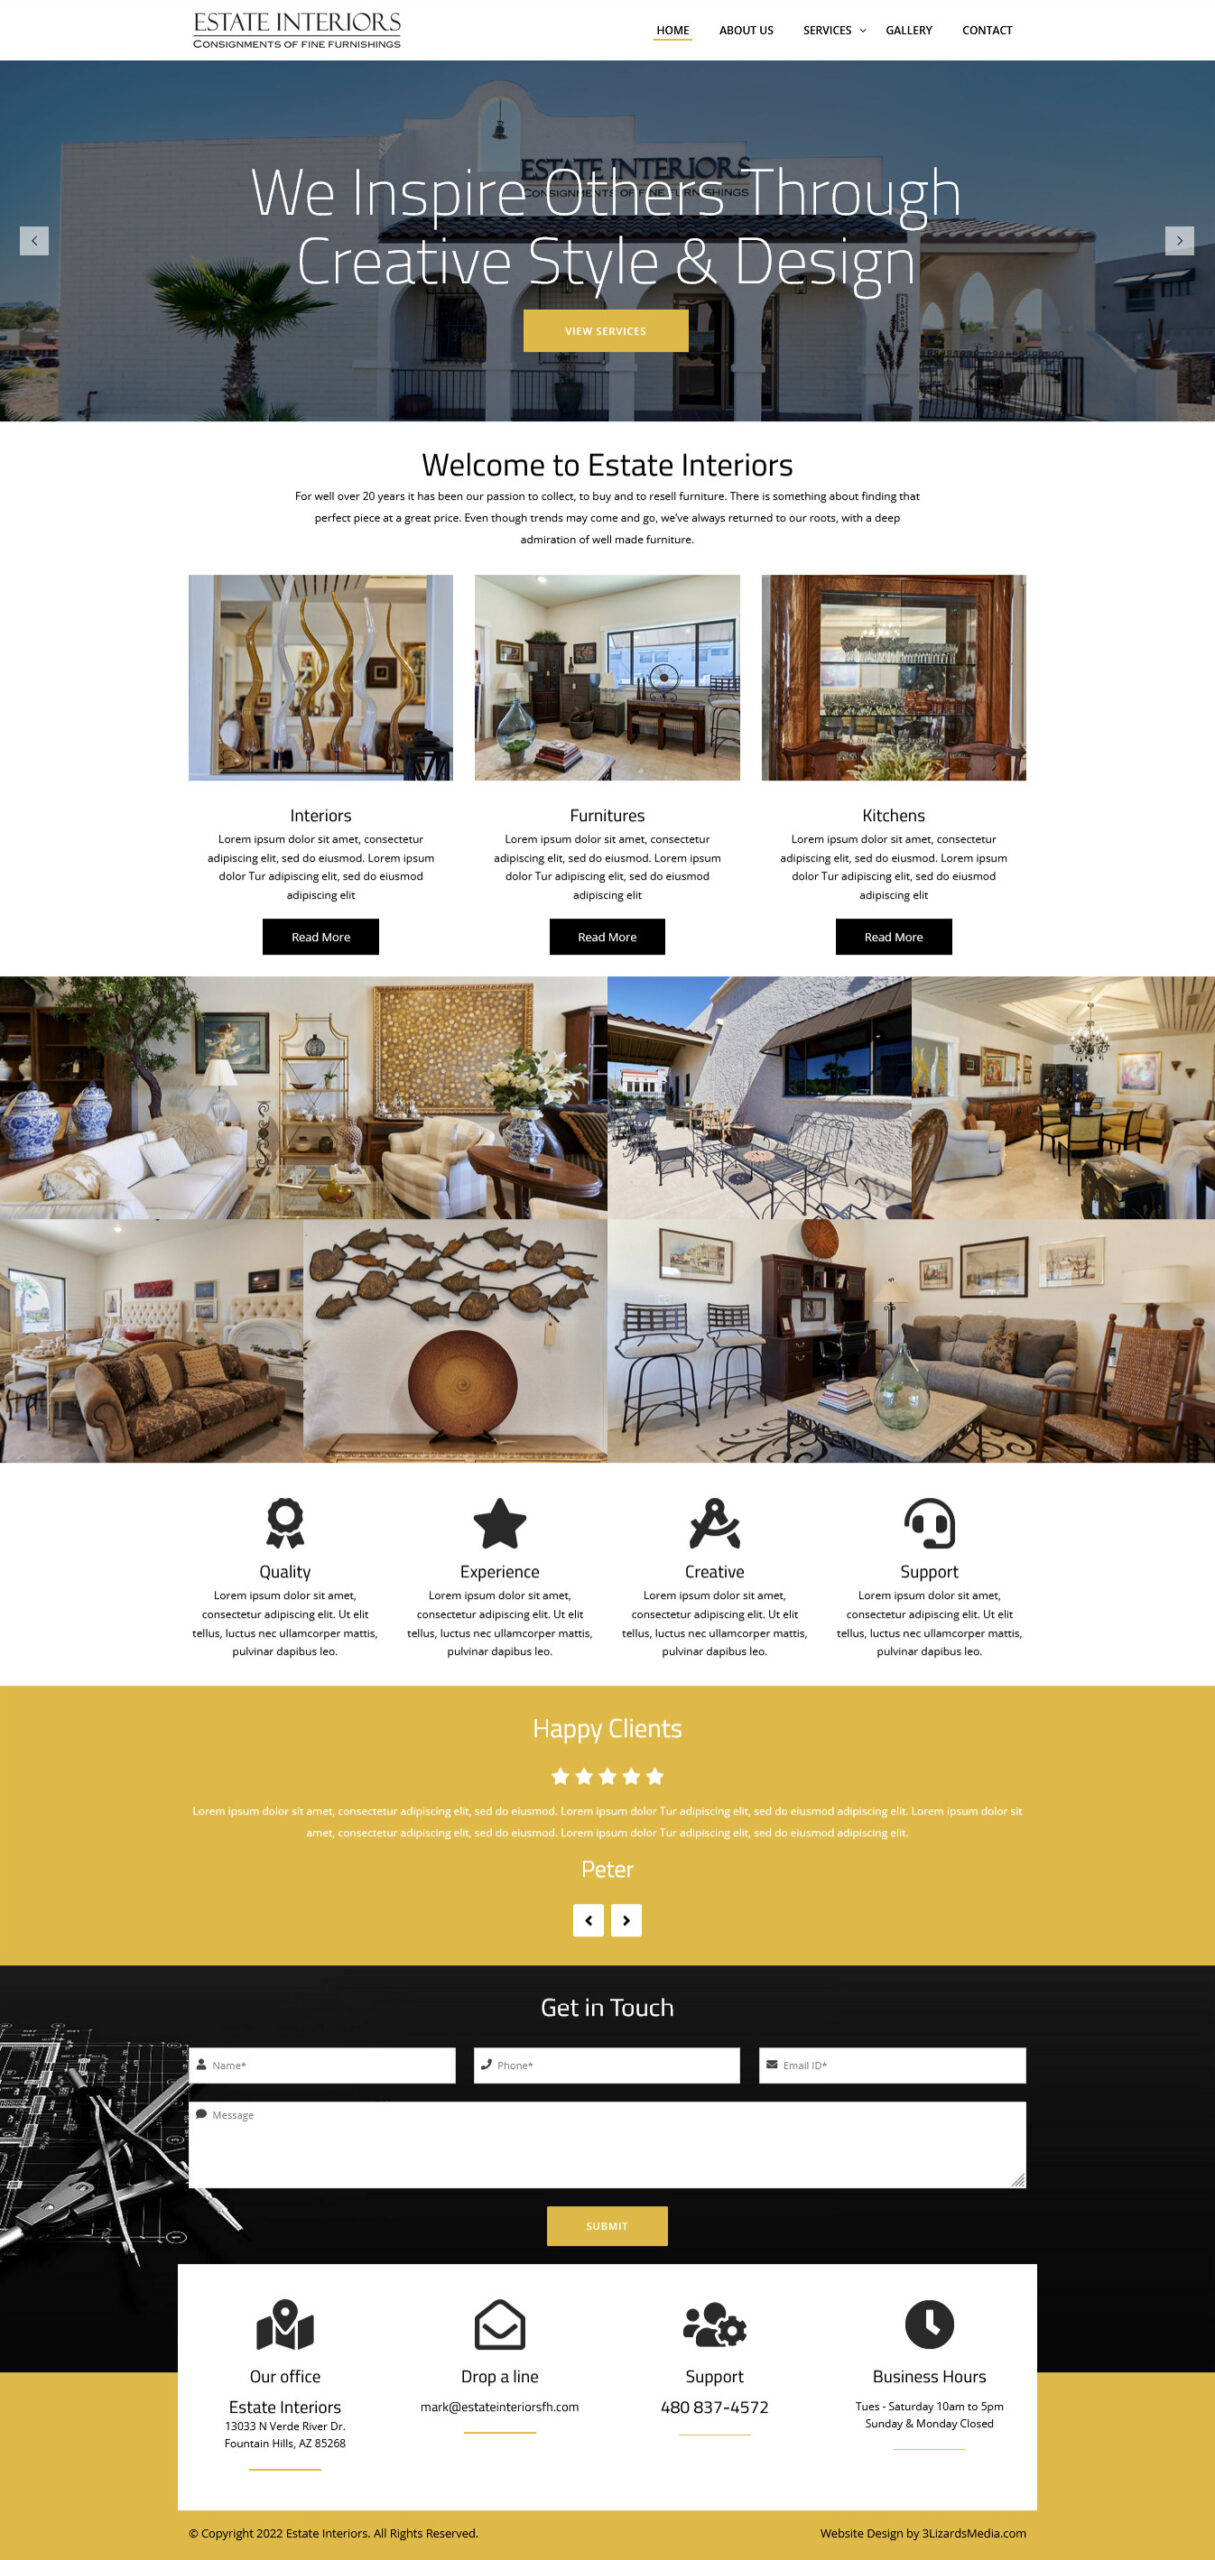 Estate Interiors Website Design